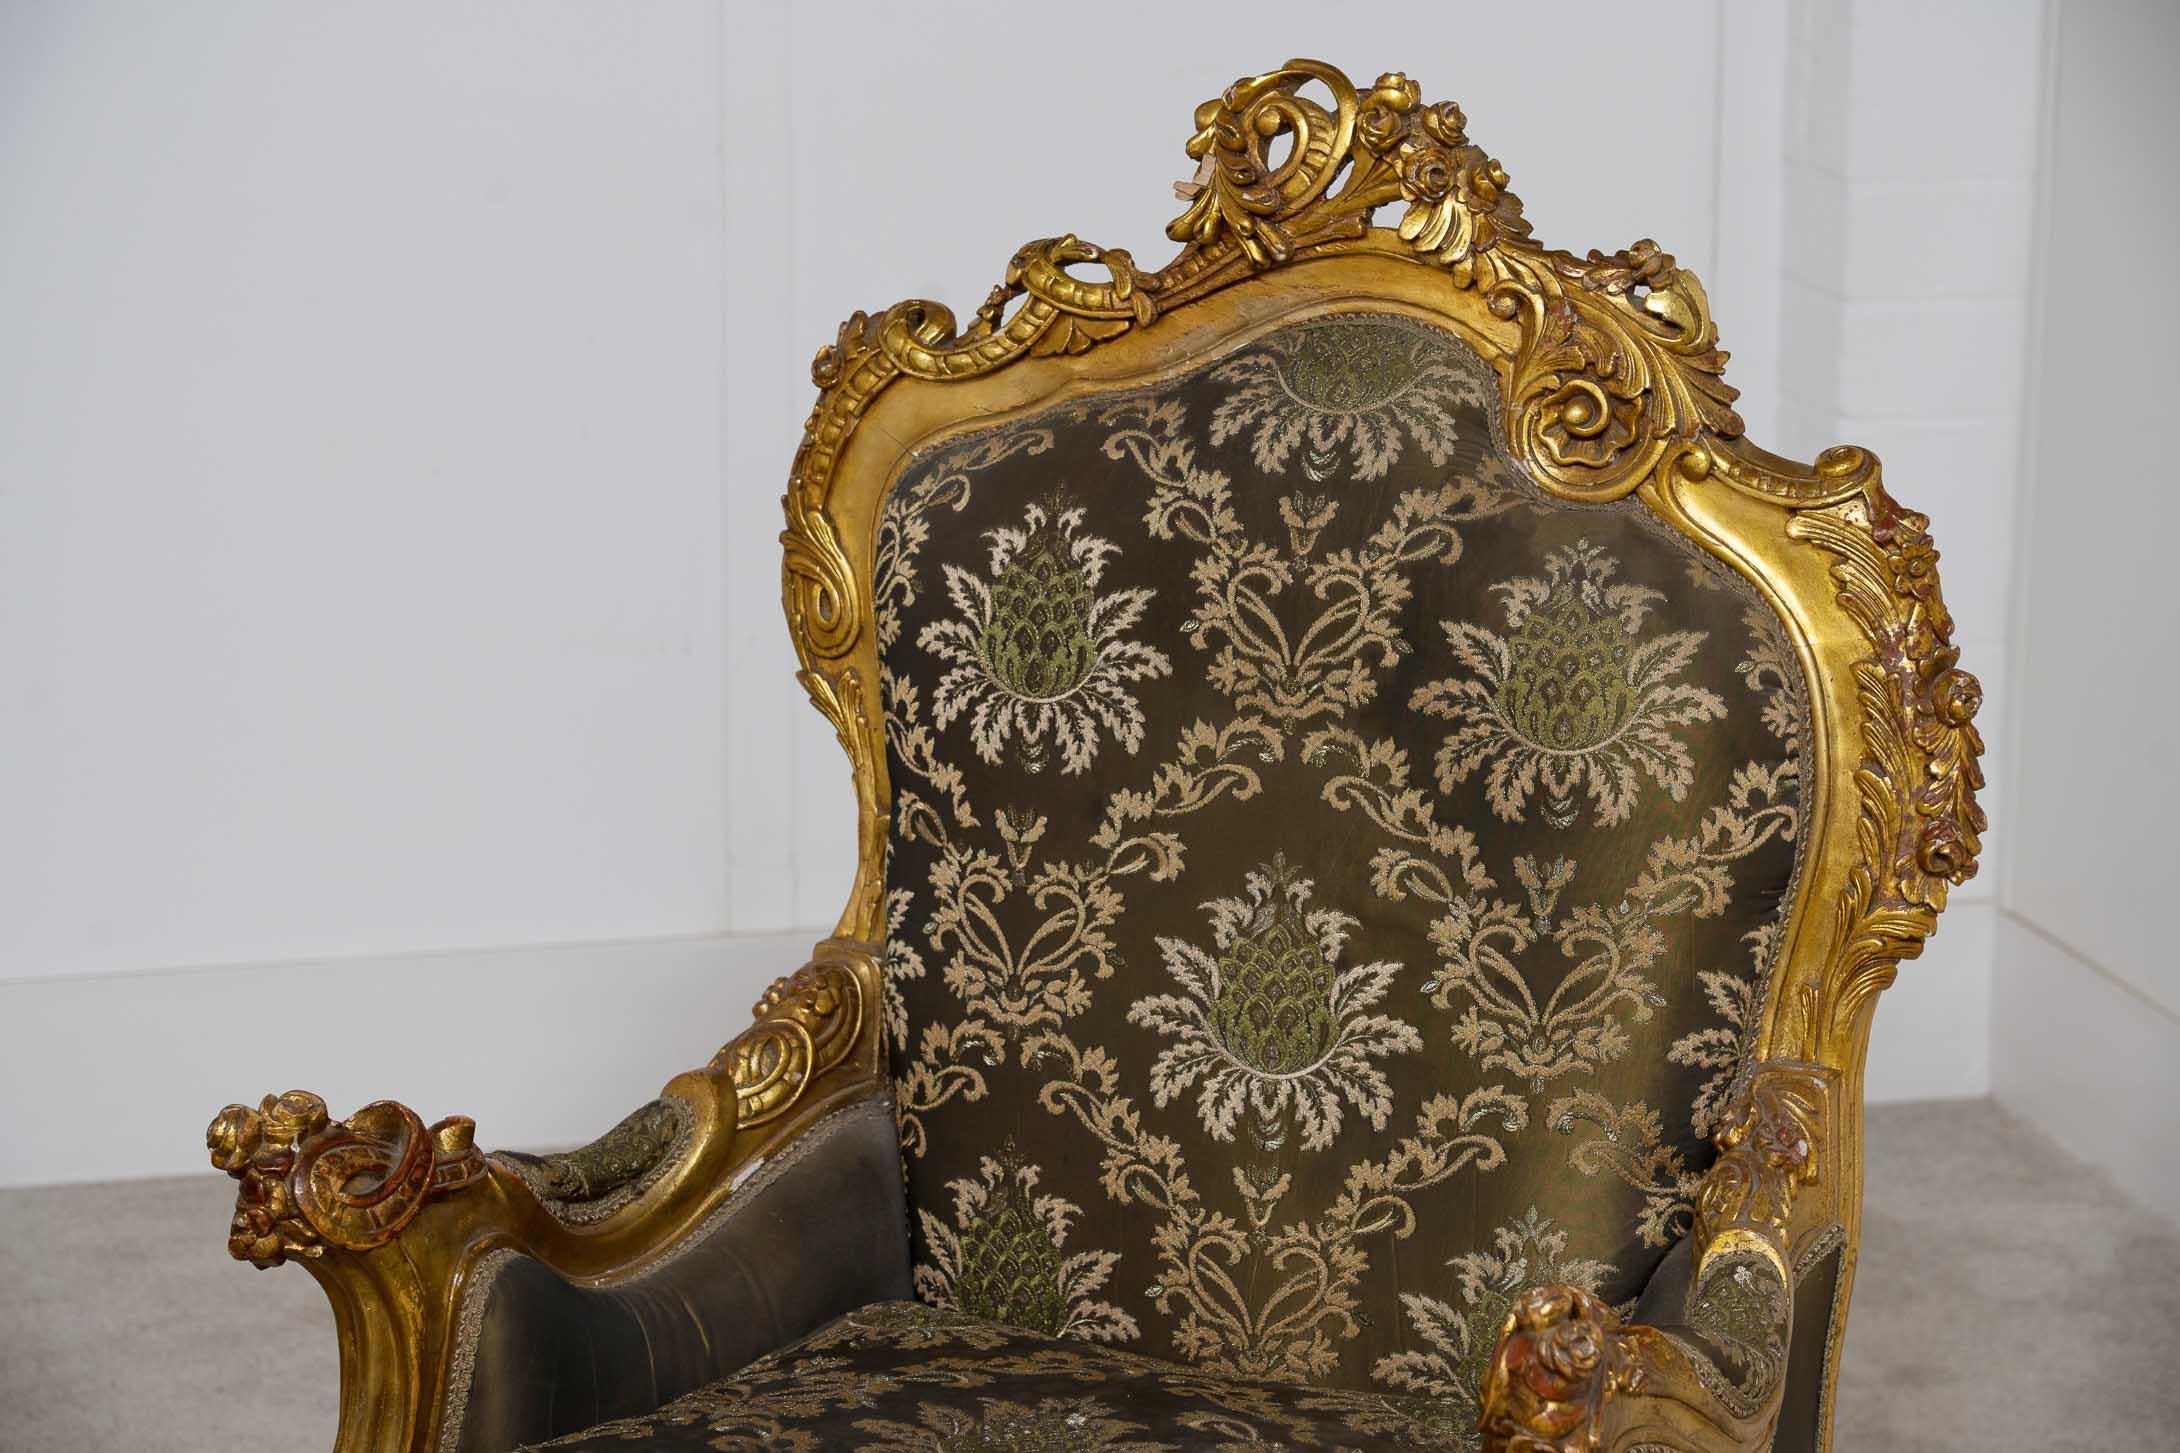 Klassisches Paar antiker französischer Sessel im Louis XVI-Stil Handgefertigt aus Gold mit gepolsterten Armlehnen
Frisch neu gepolstert mit gewebtem Blumenmuster
Gekauft bei einem Händler in der Rue de Rossiers auf den Pariser